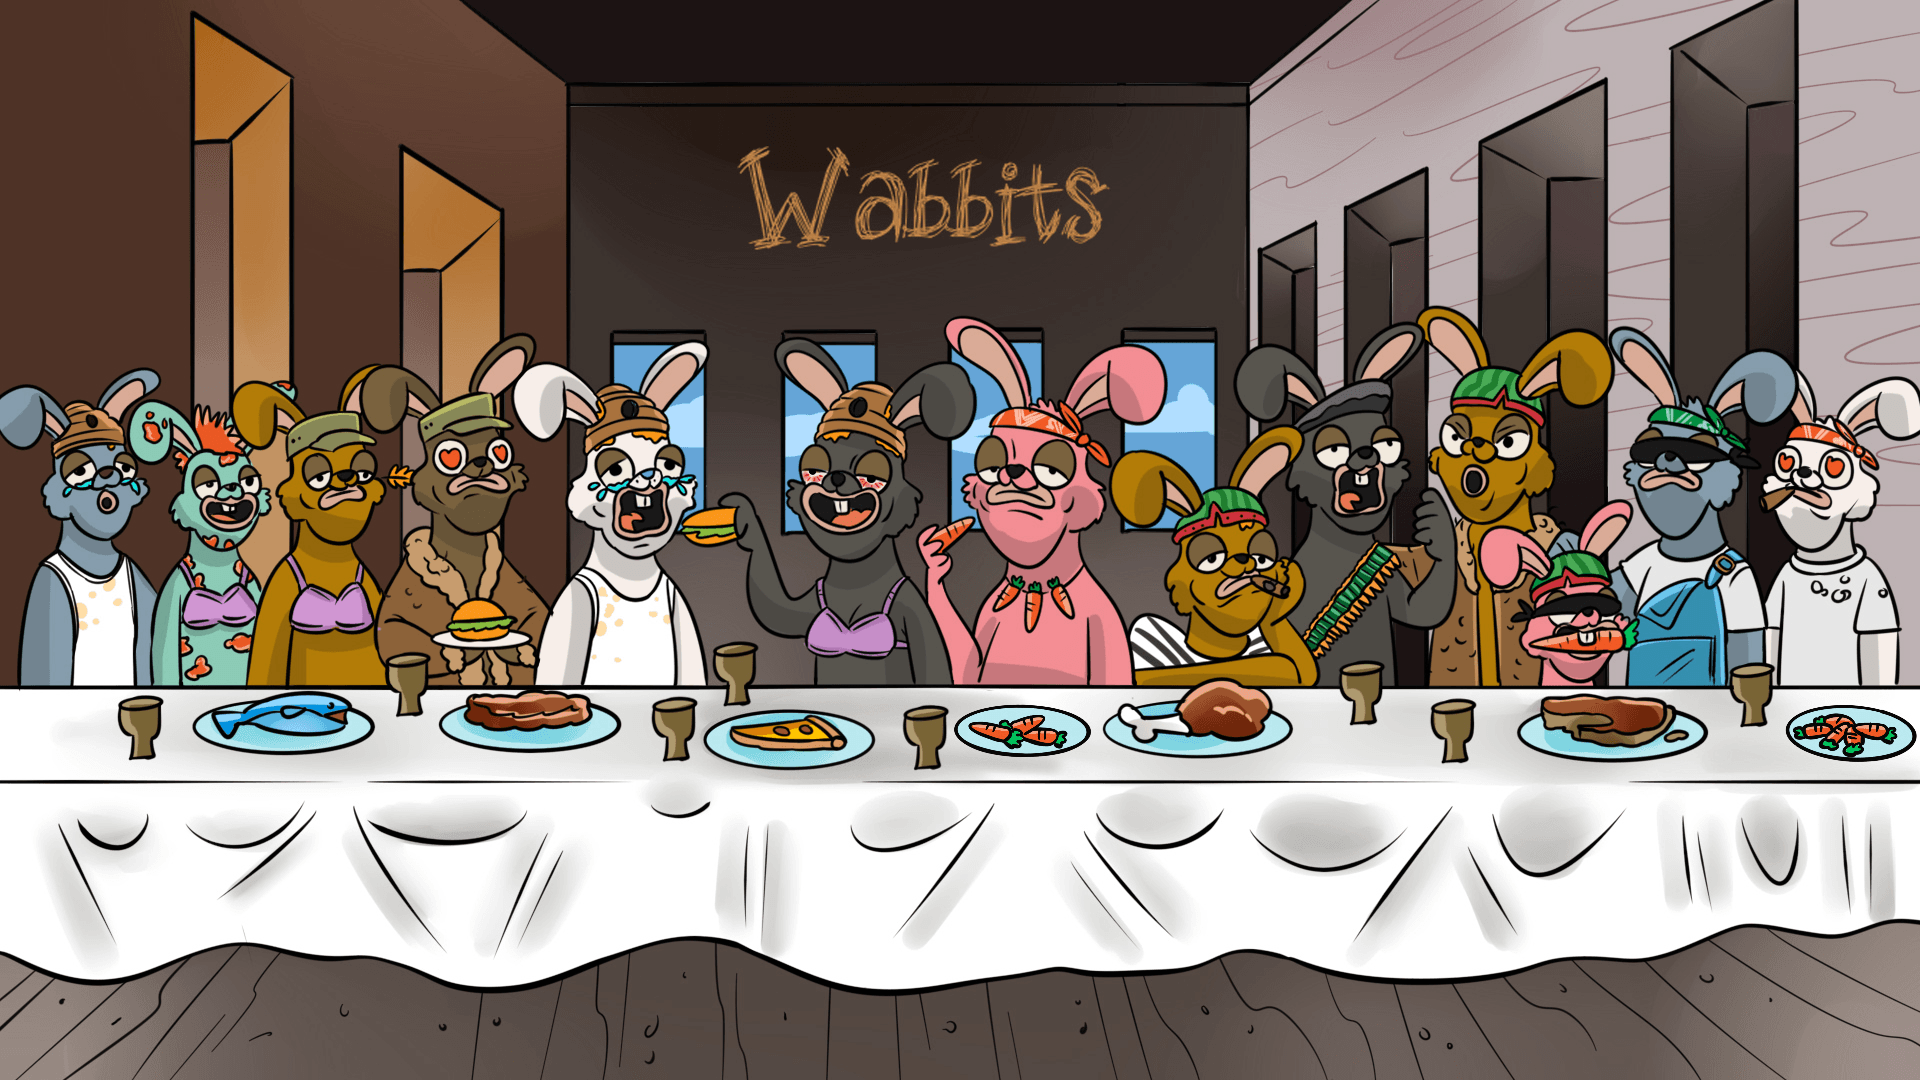 The Wabbits